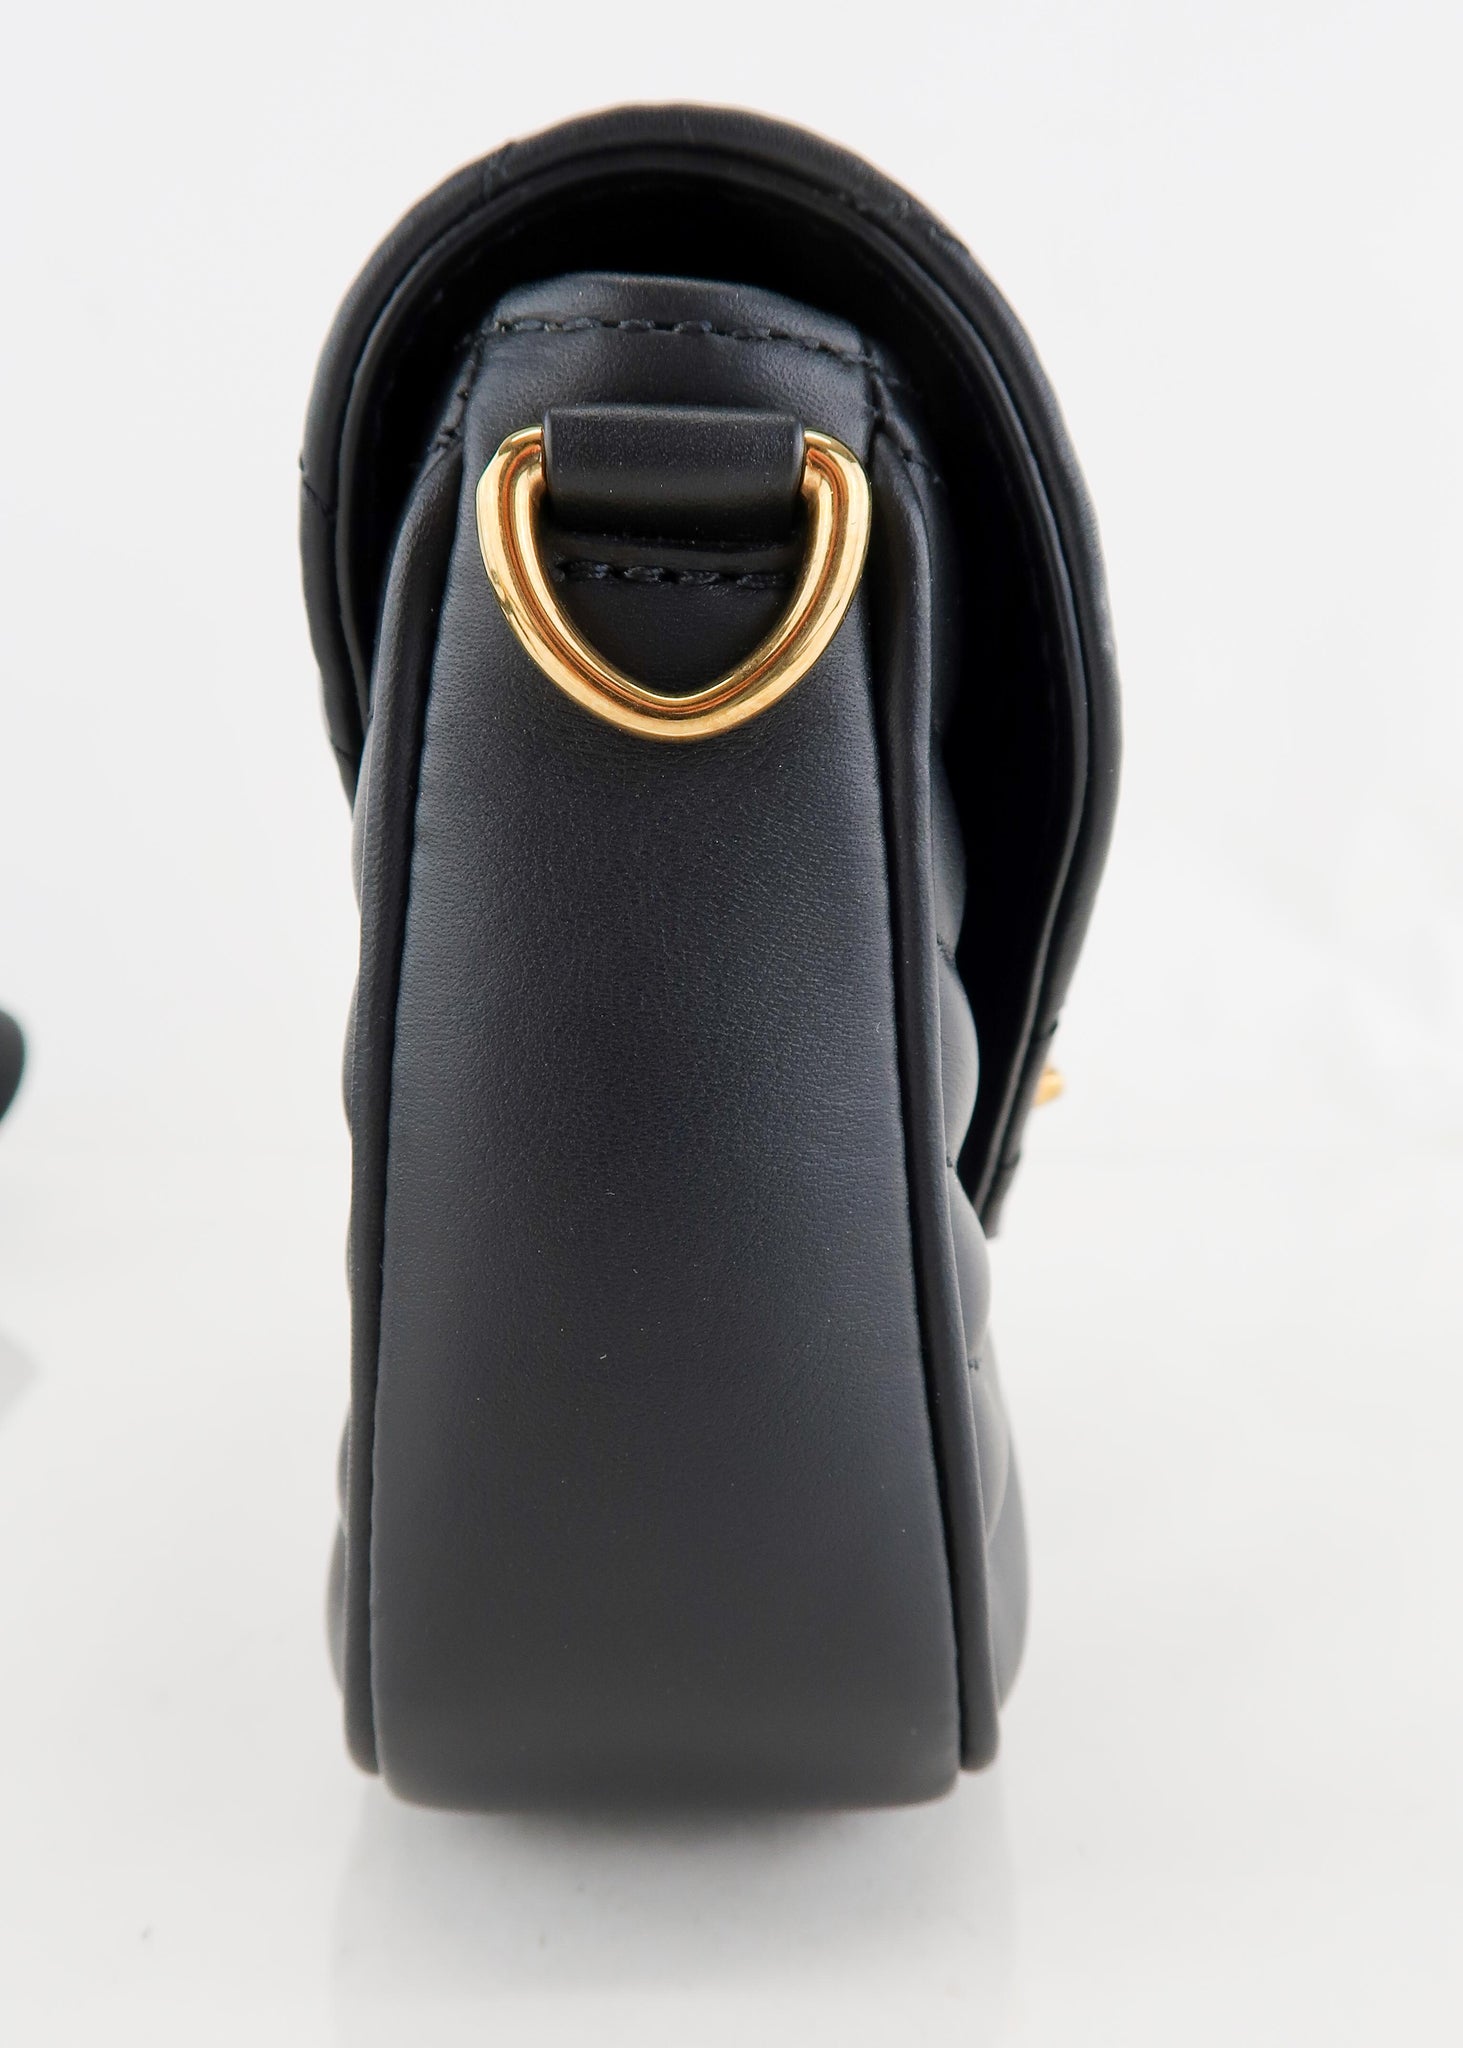 The New Louis Vuitton Monogram Pochette Bag ⋆ Opulent Club